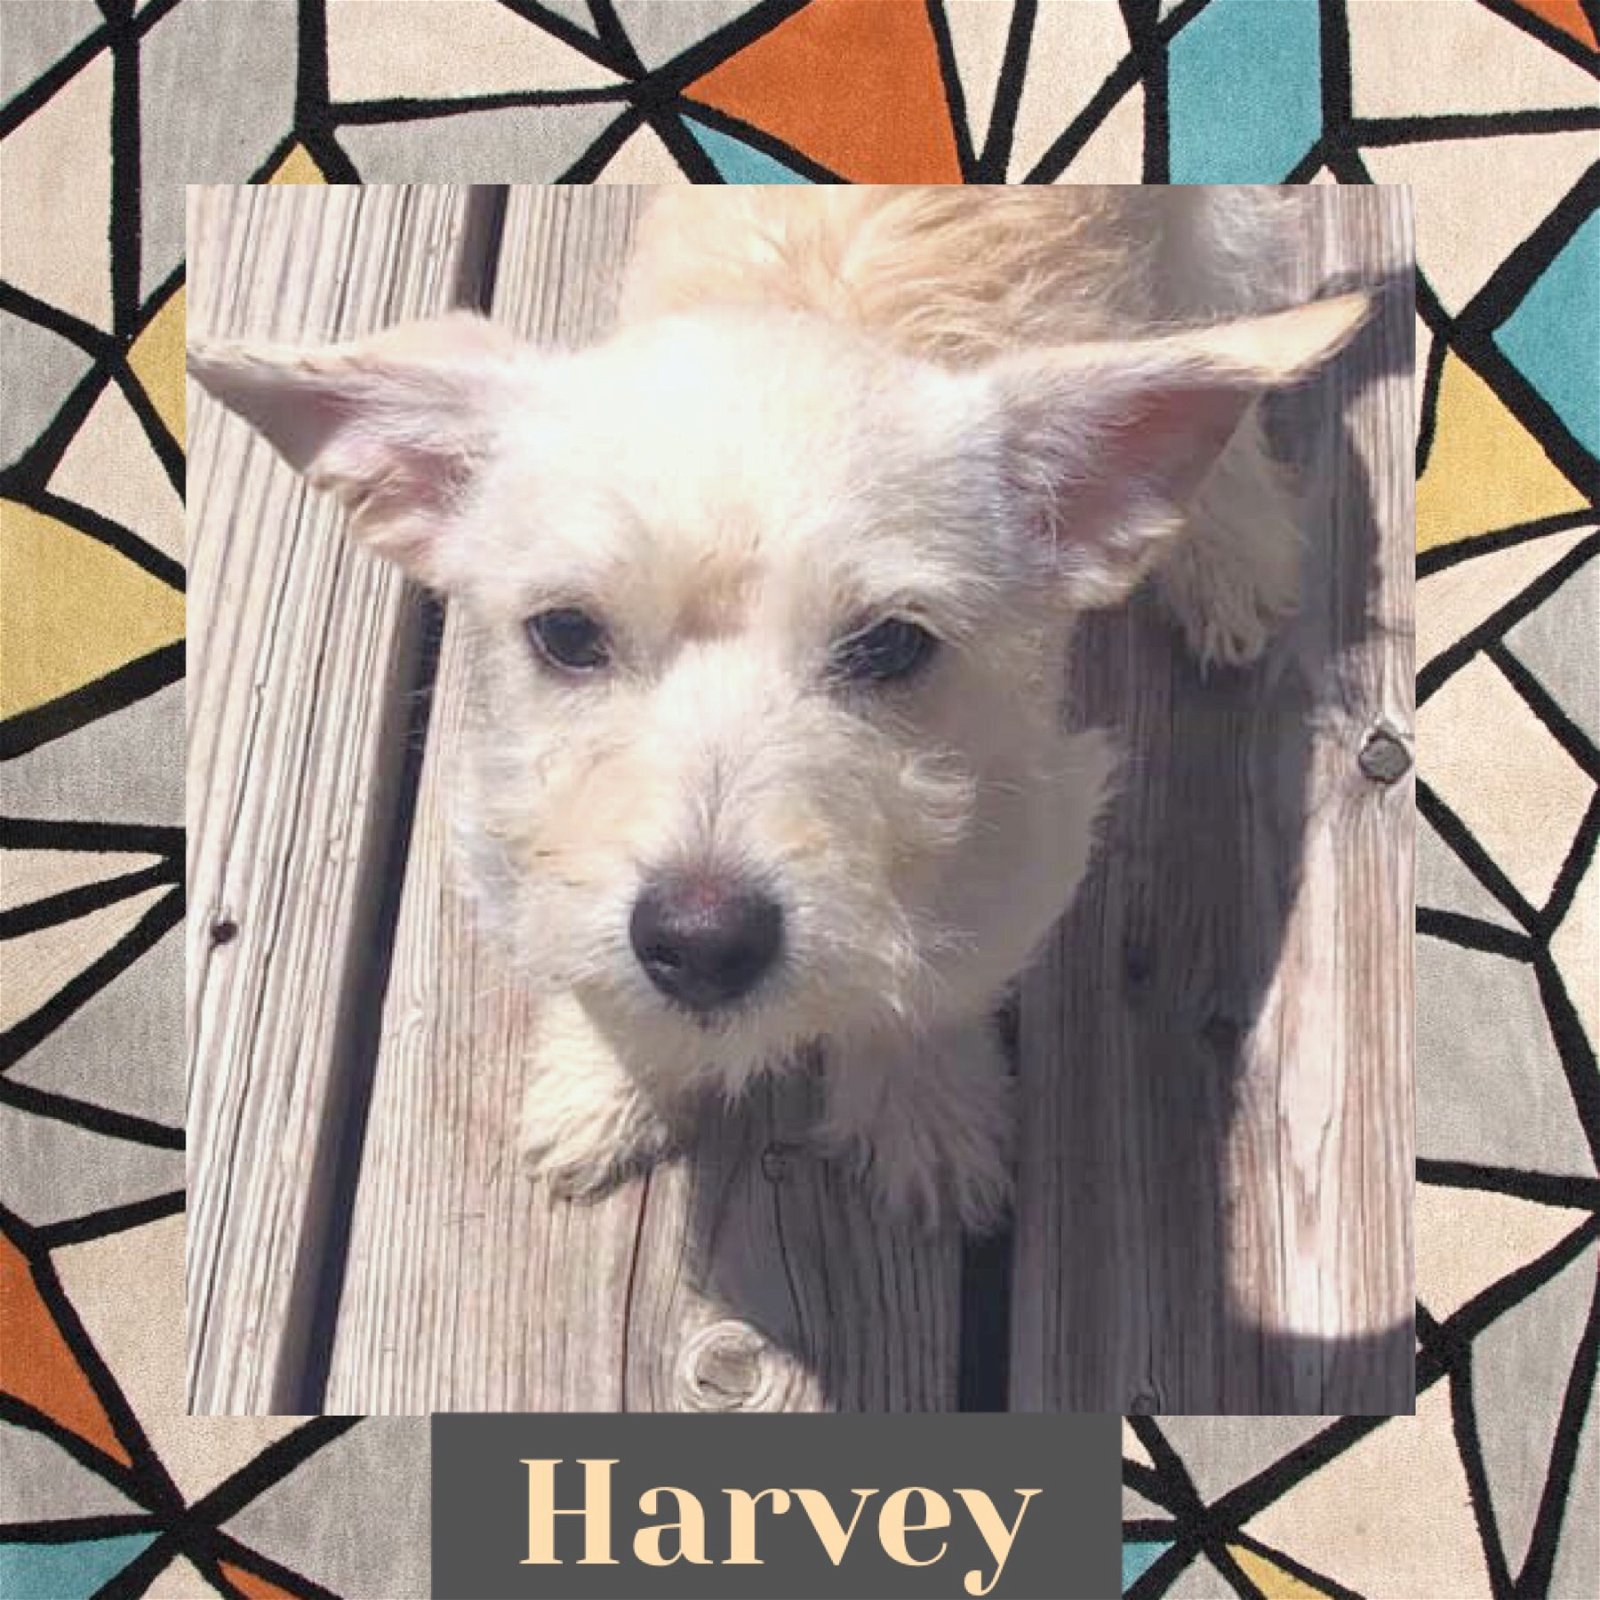 adoptable Dog in Littleton, CO named Harvey